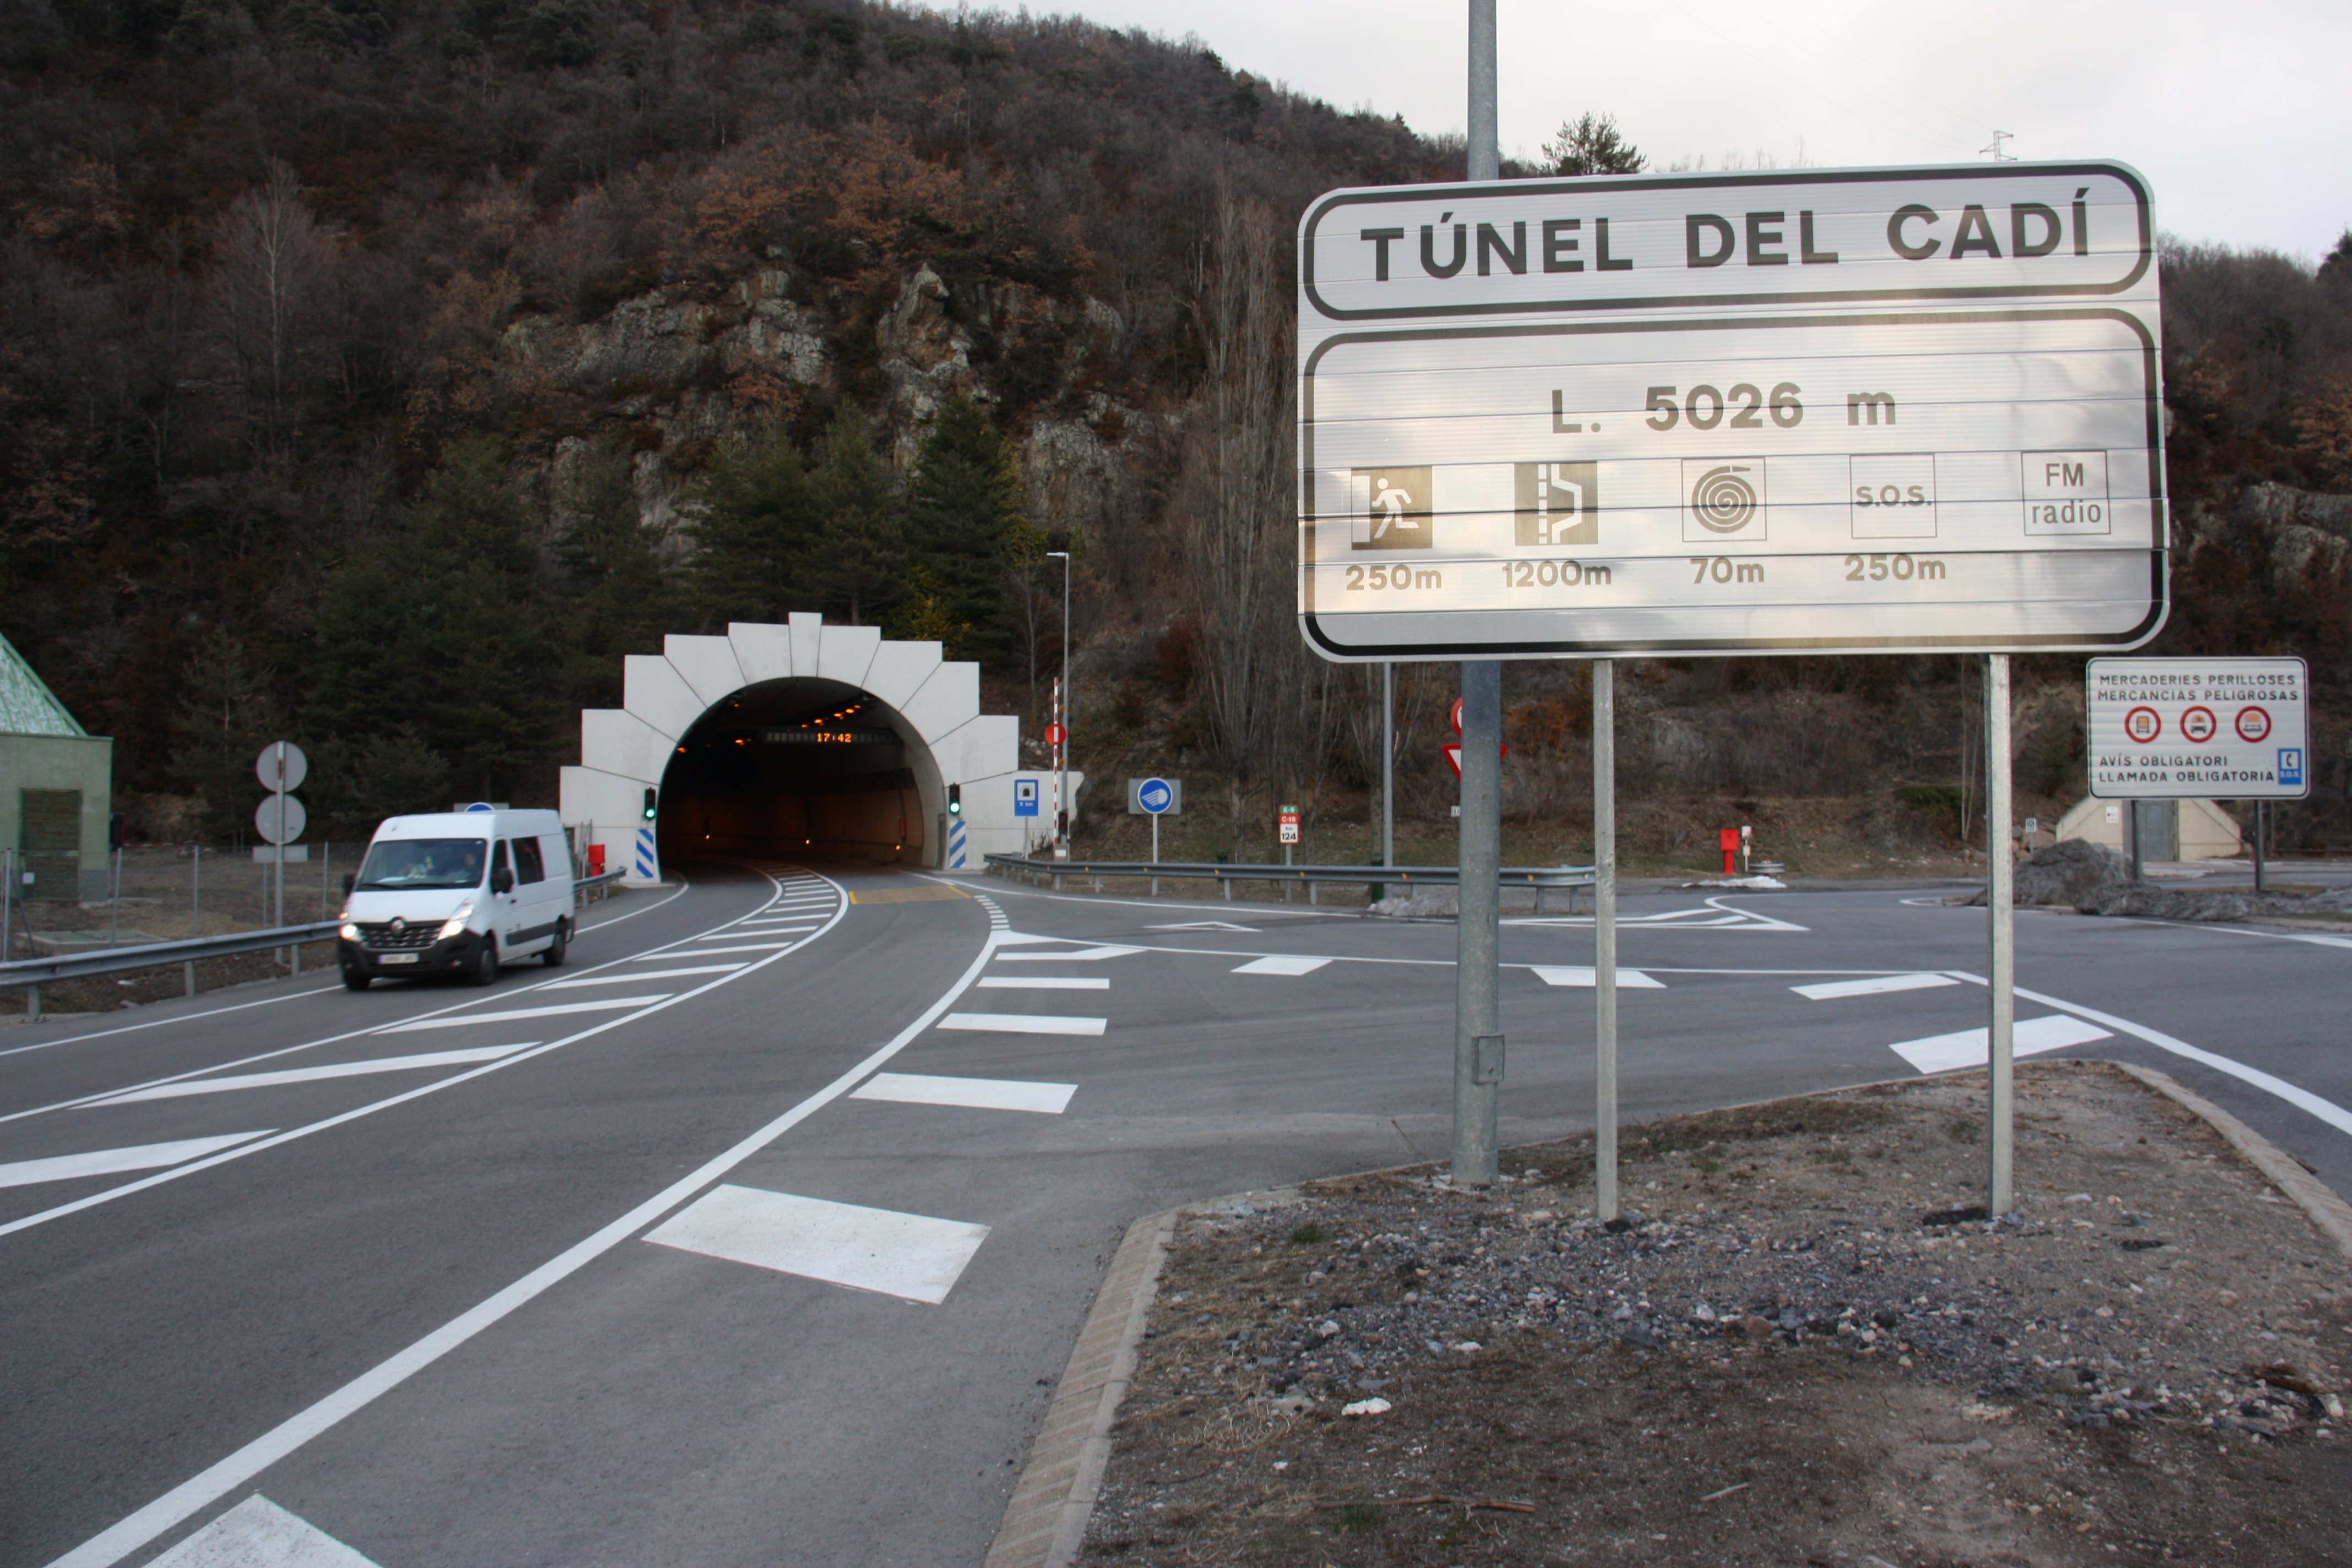 Oferta milionària d'Abertis pels túnels de Barcelona i Cadí